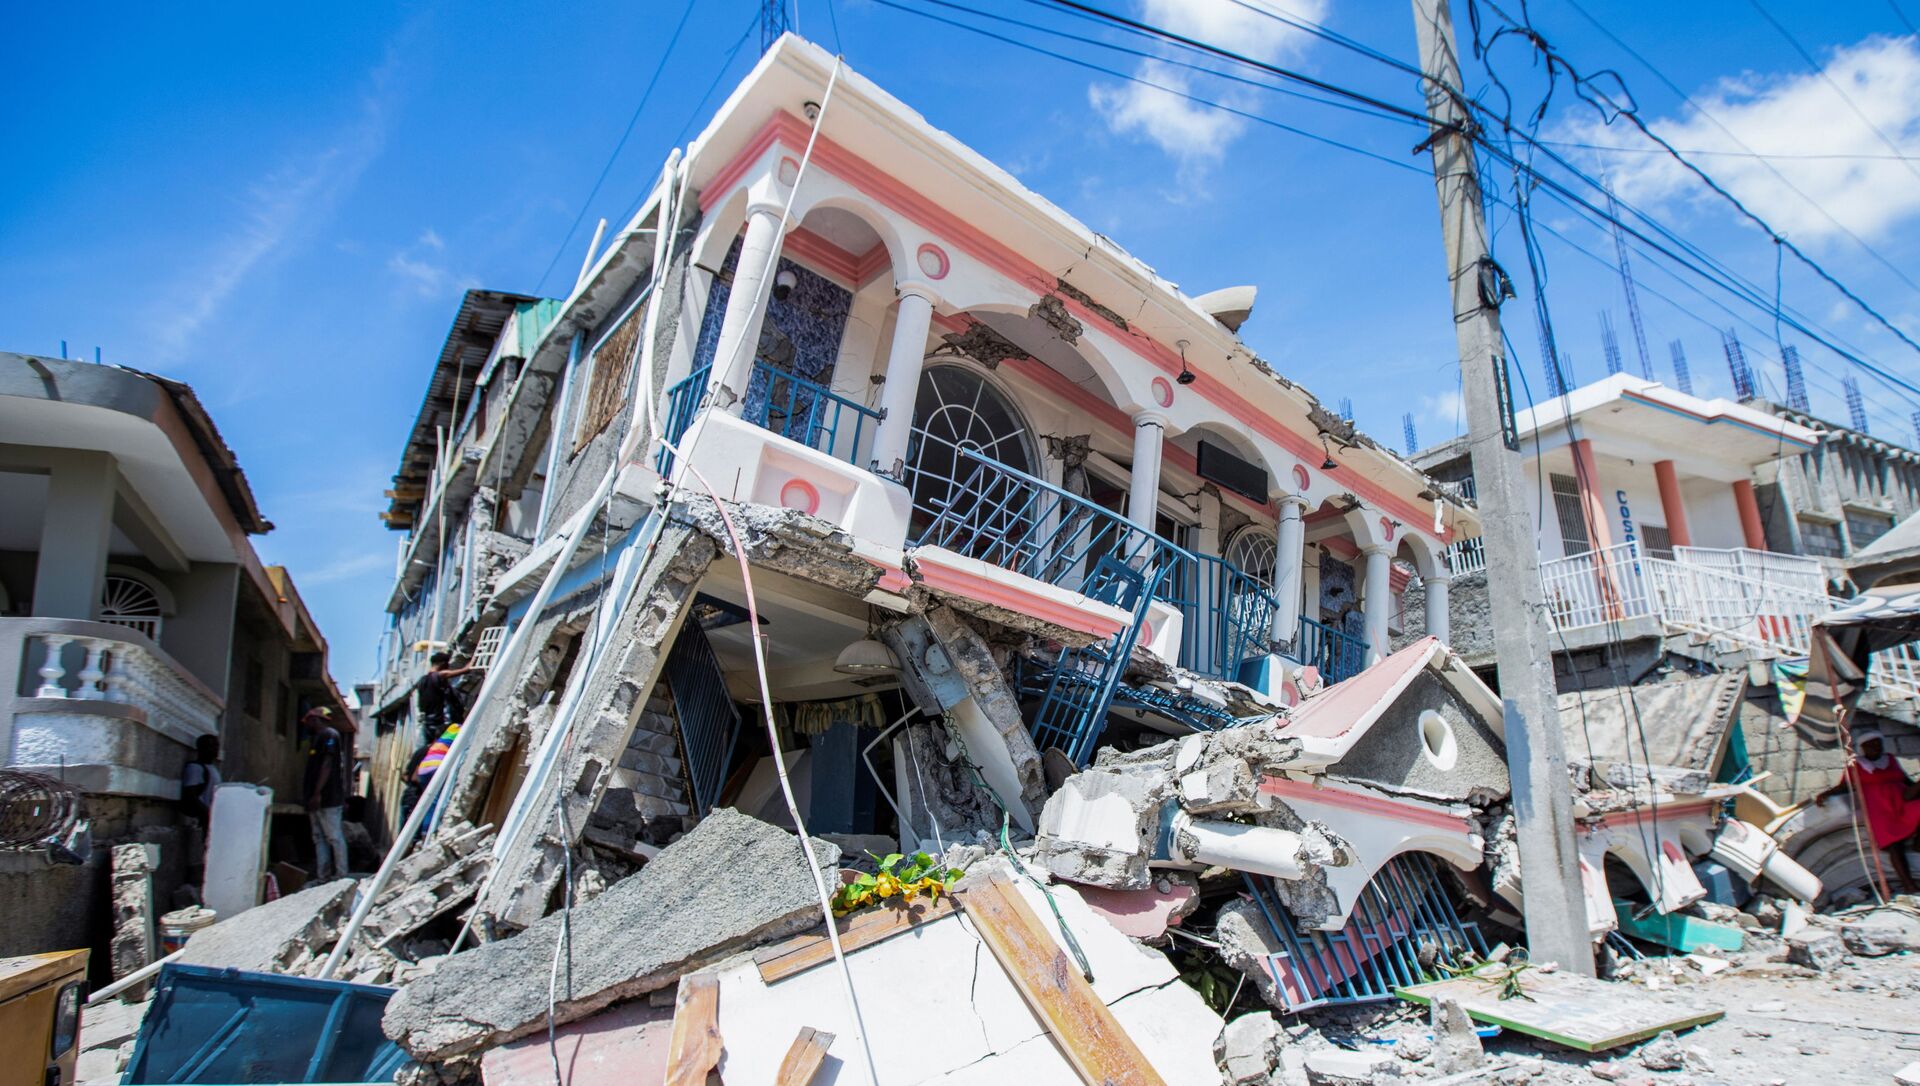 Destructions en Haïti après le séisme, le 14 août 2021 - Sputnik Afrique, 1920, 15.08.2021